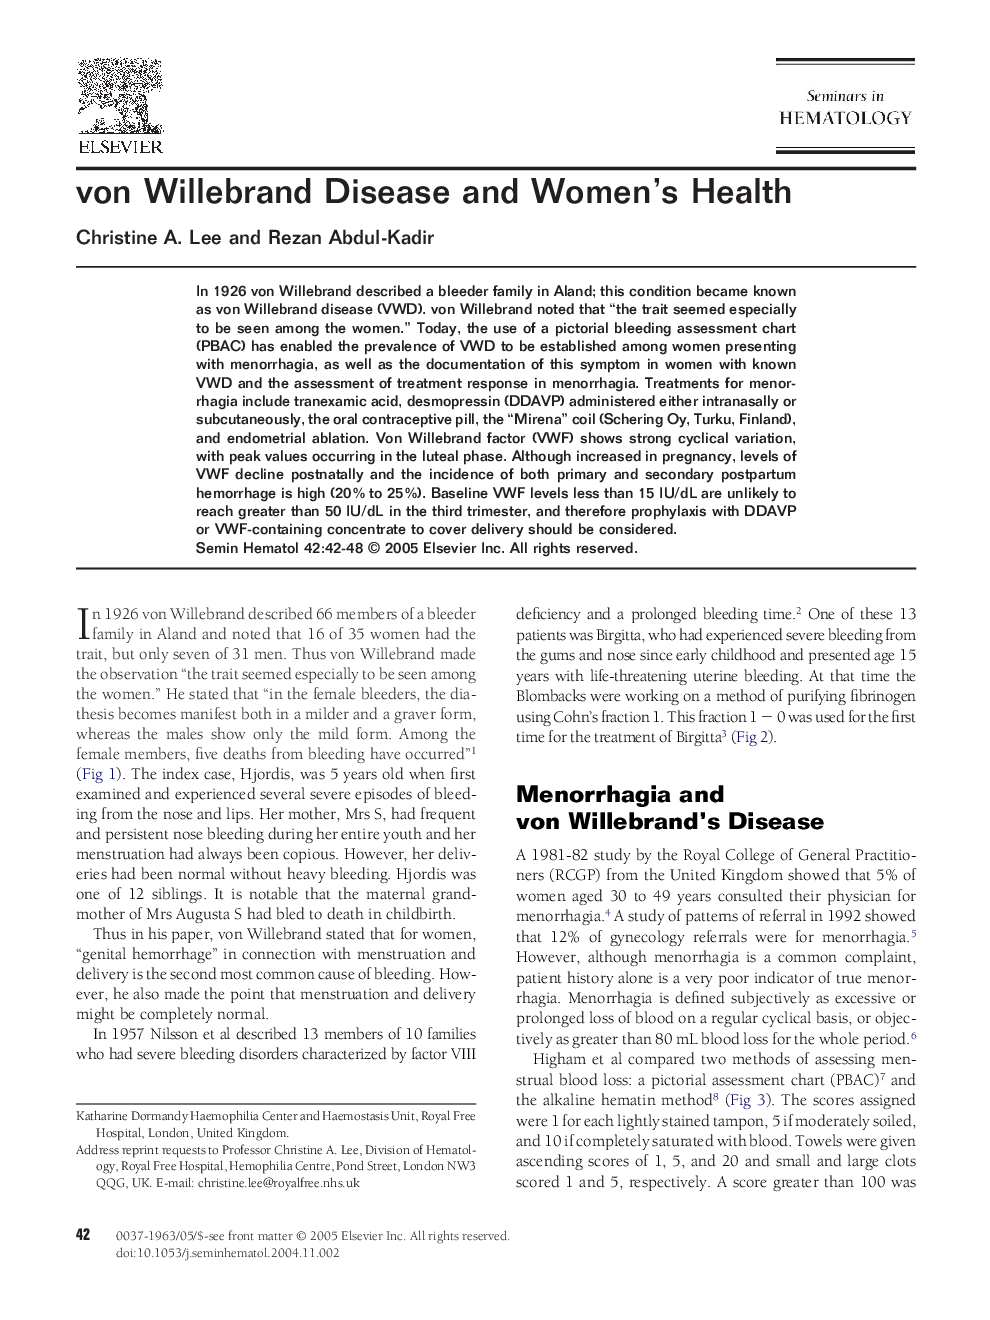 von Willebrand disease and women's health